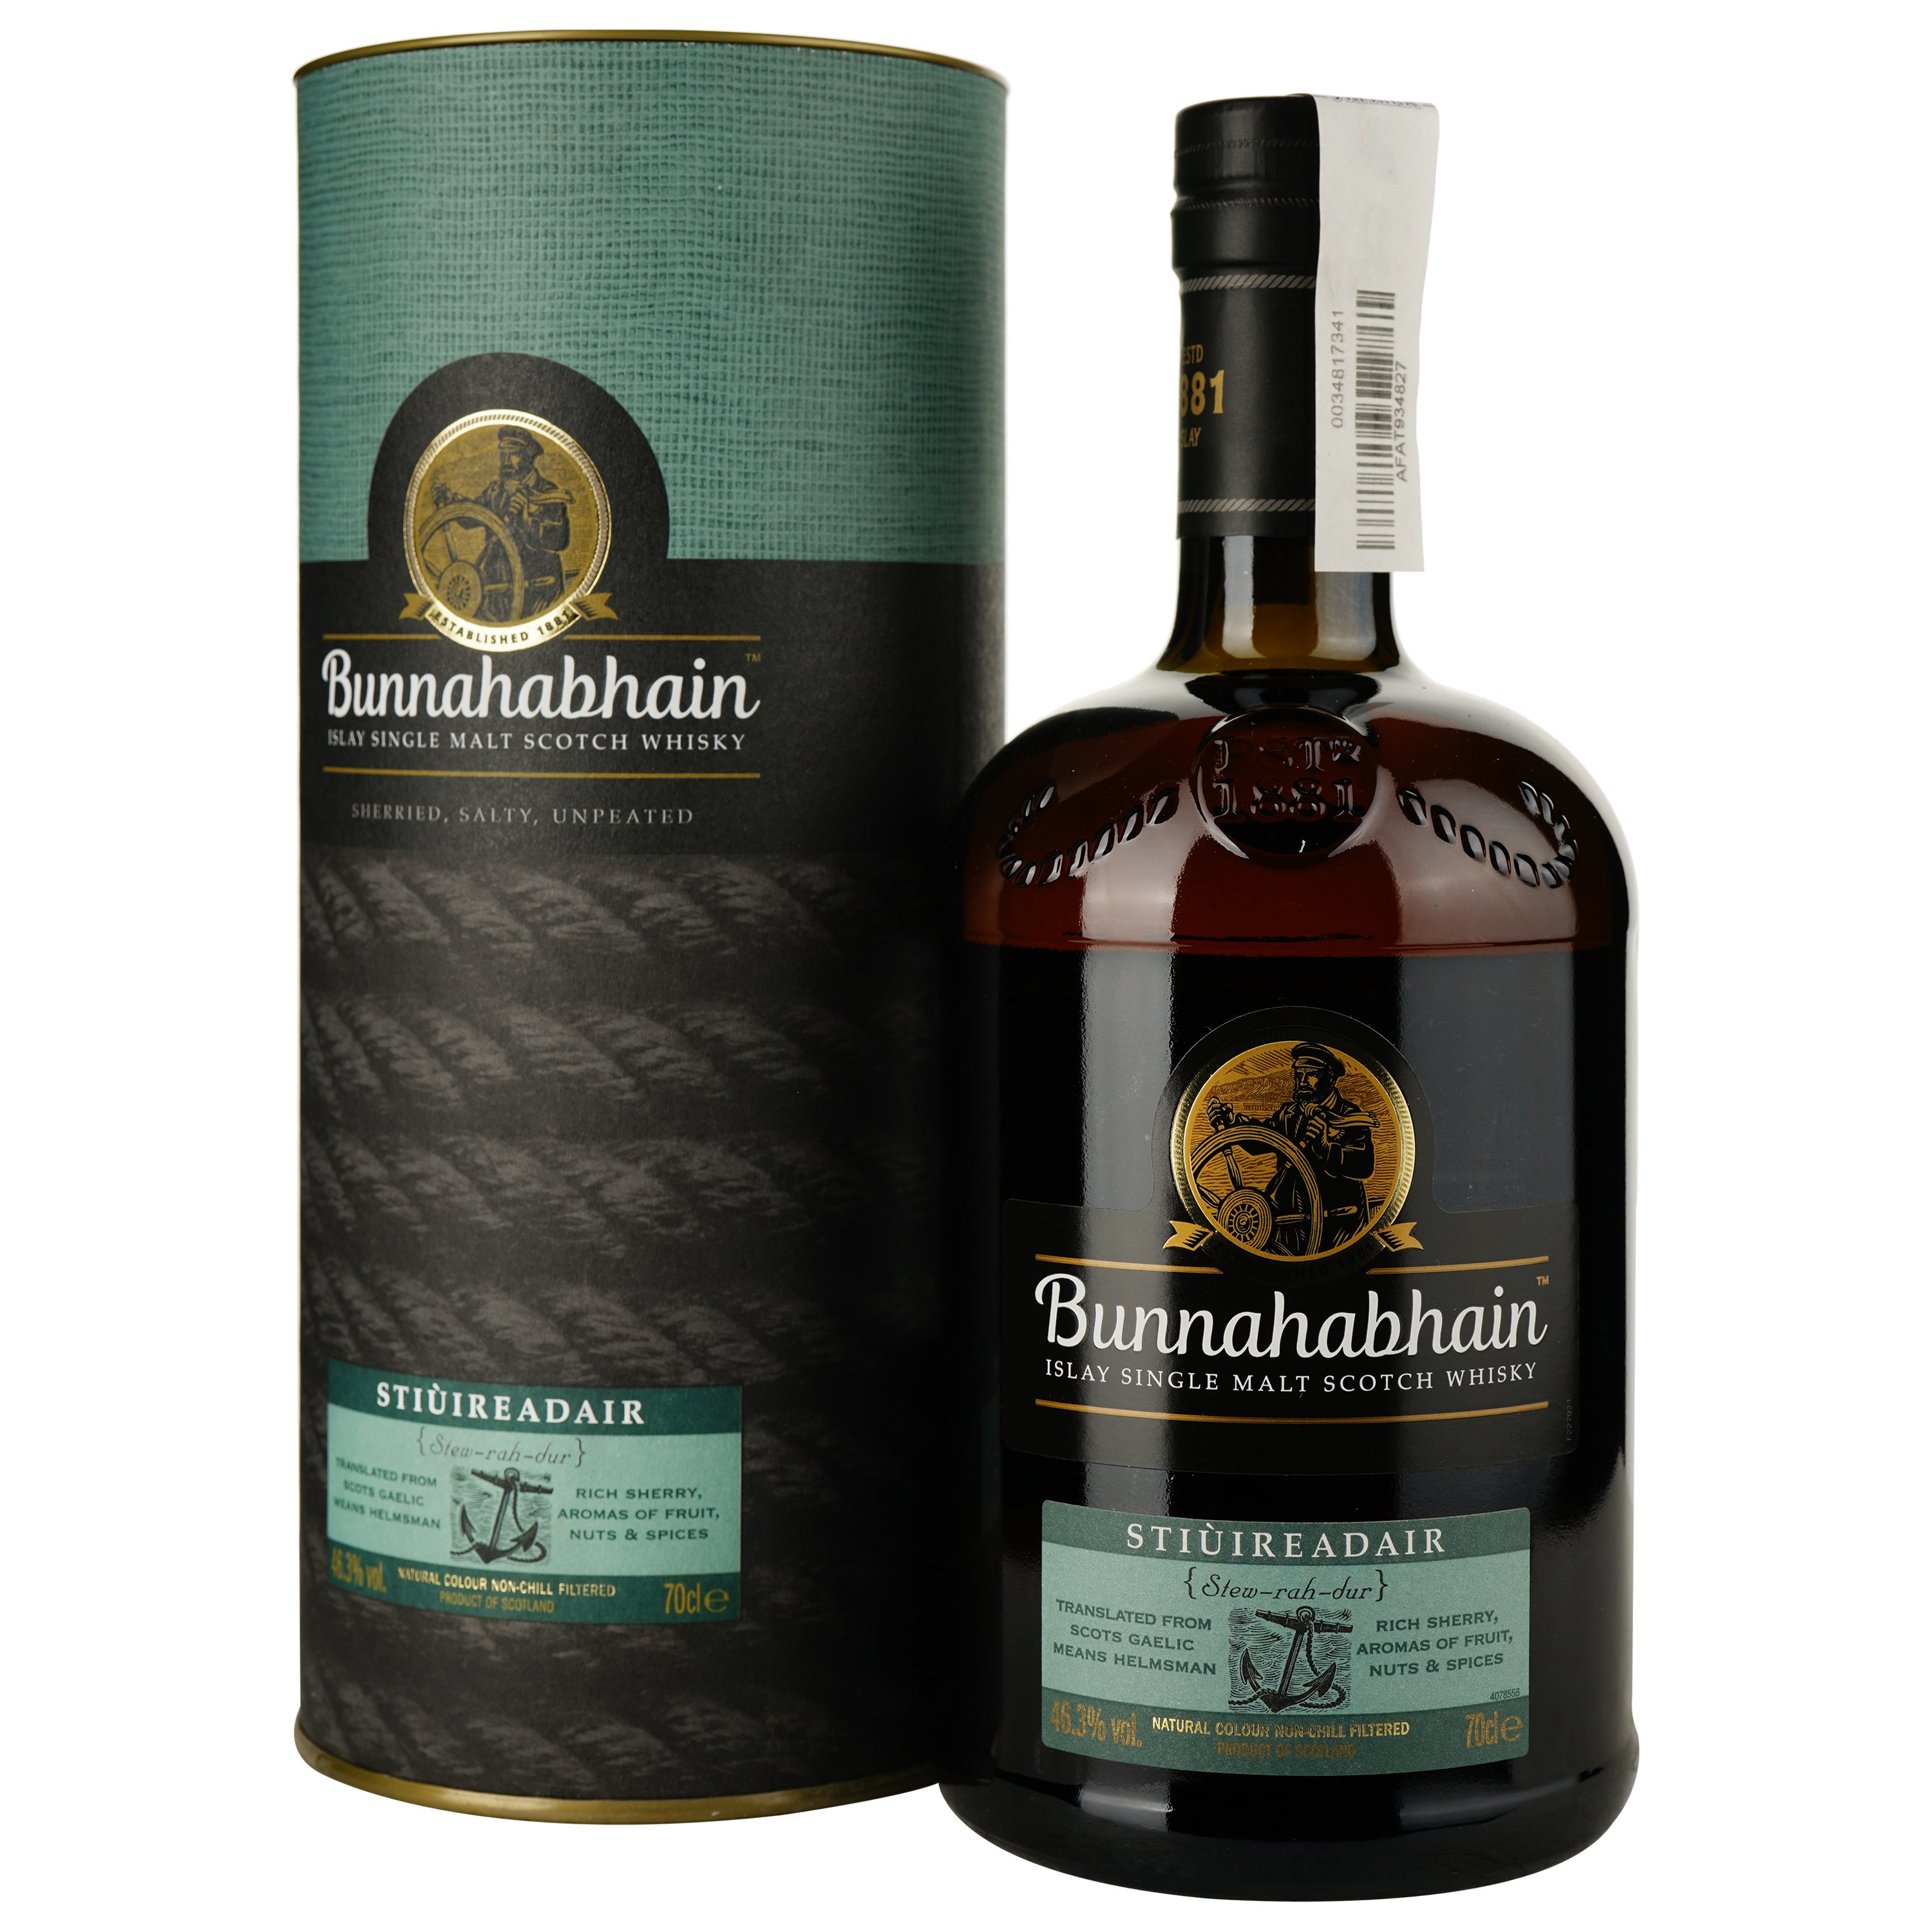 Віскі Bunnahabhain Stiuireadair Single Malt Scotch Whisky 46.3% 0.7 л, в подарунковій упаковці - фото 1